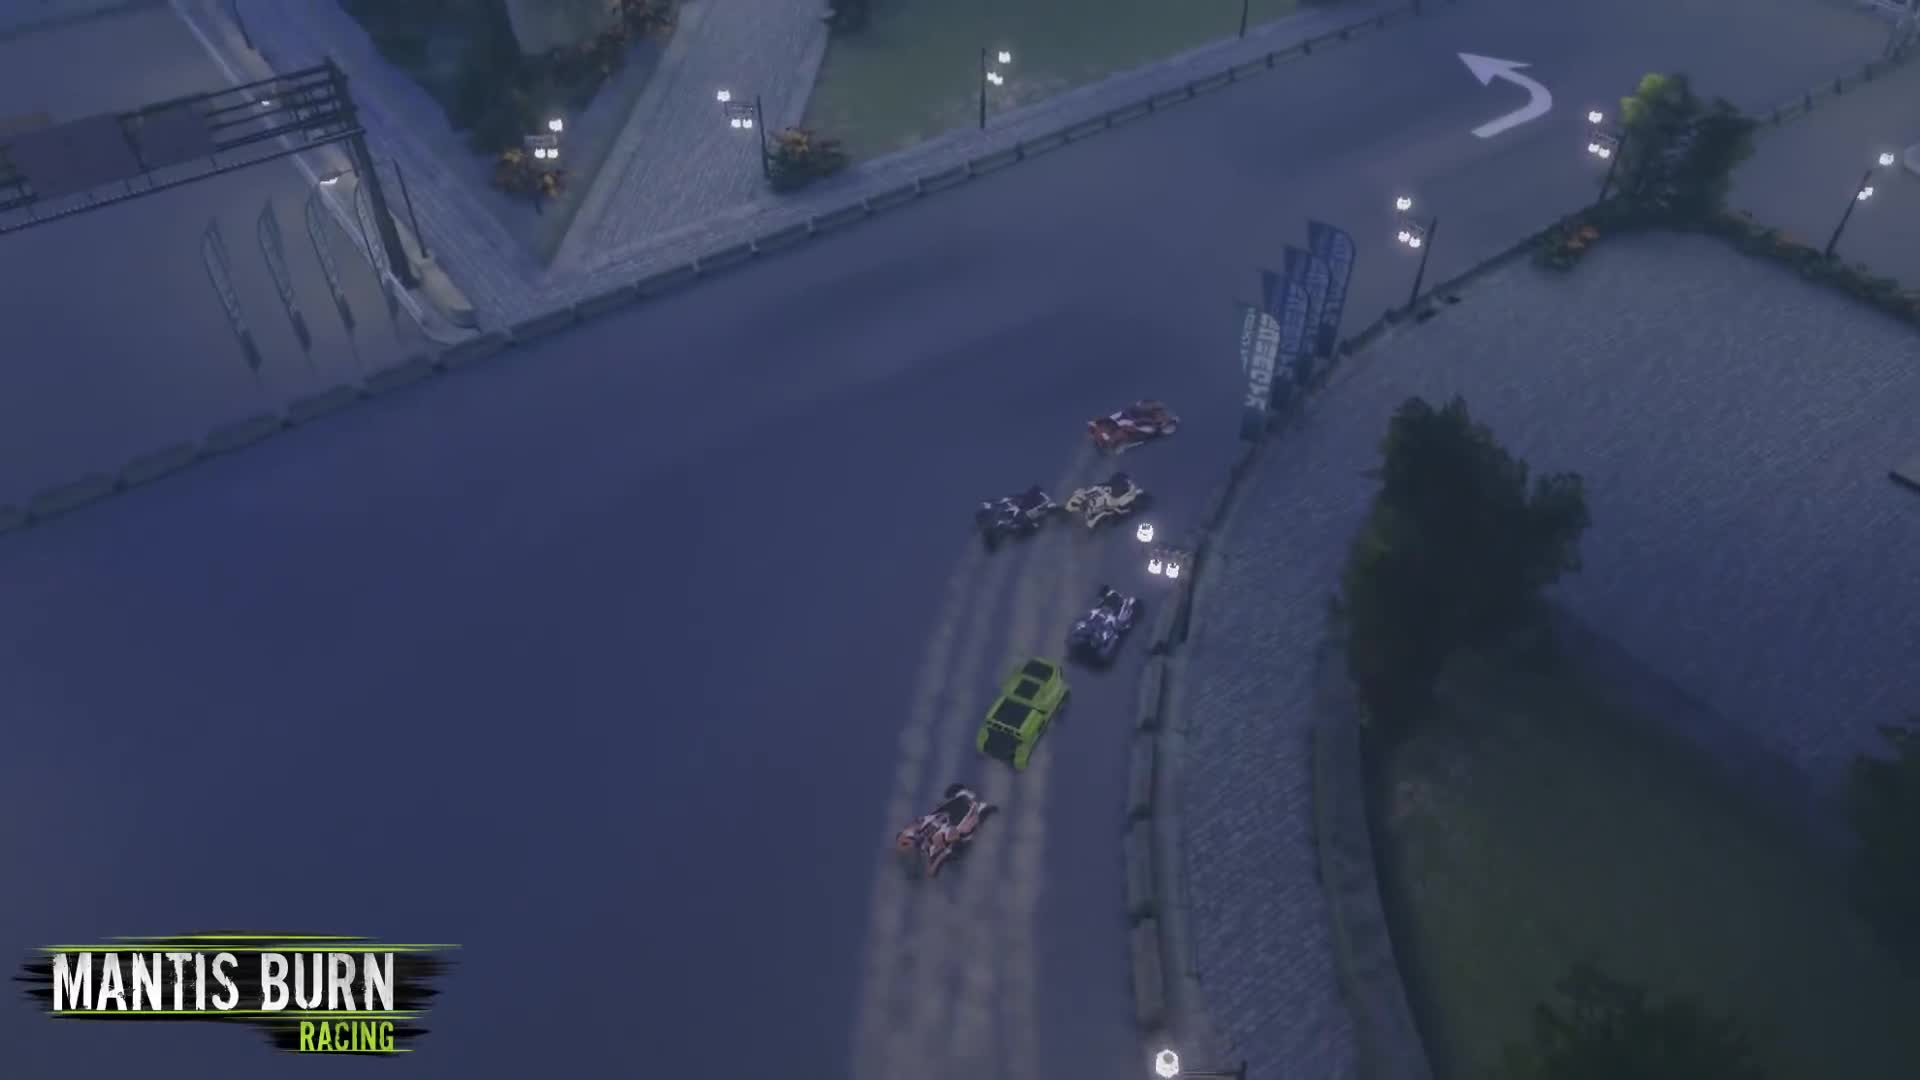 Mantis Burn Racing - Release Trailer